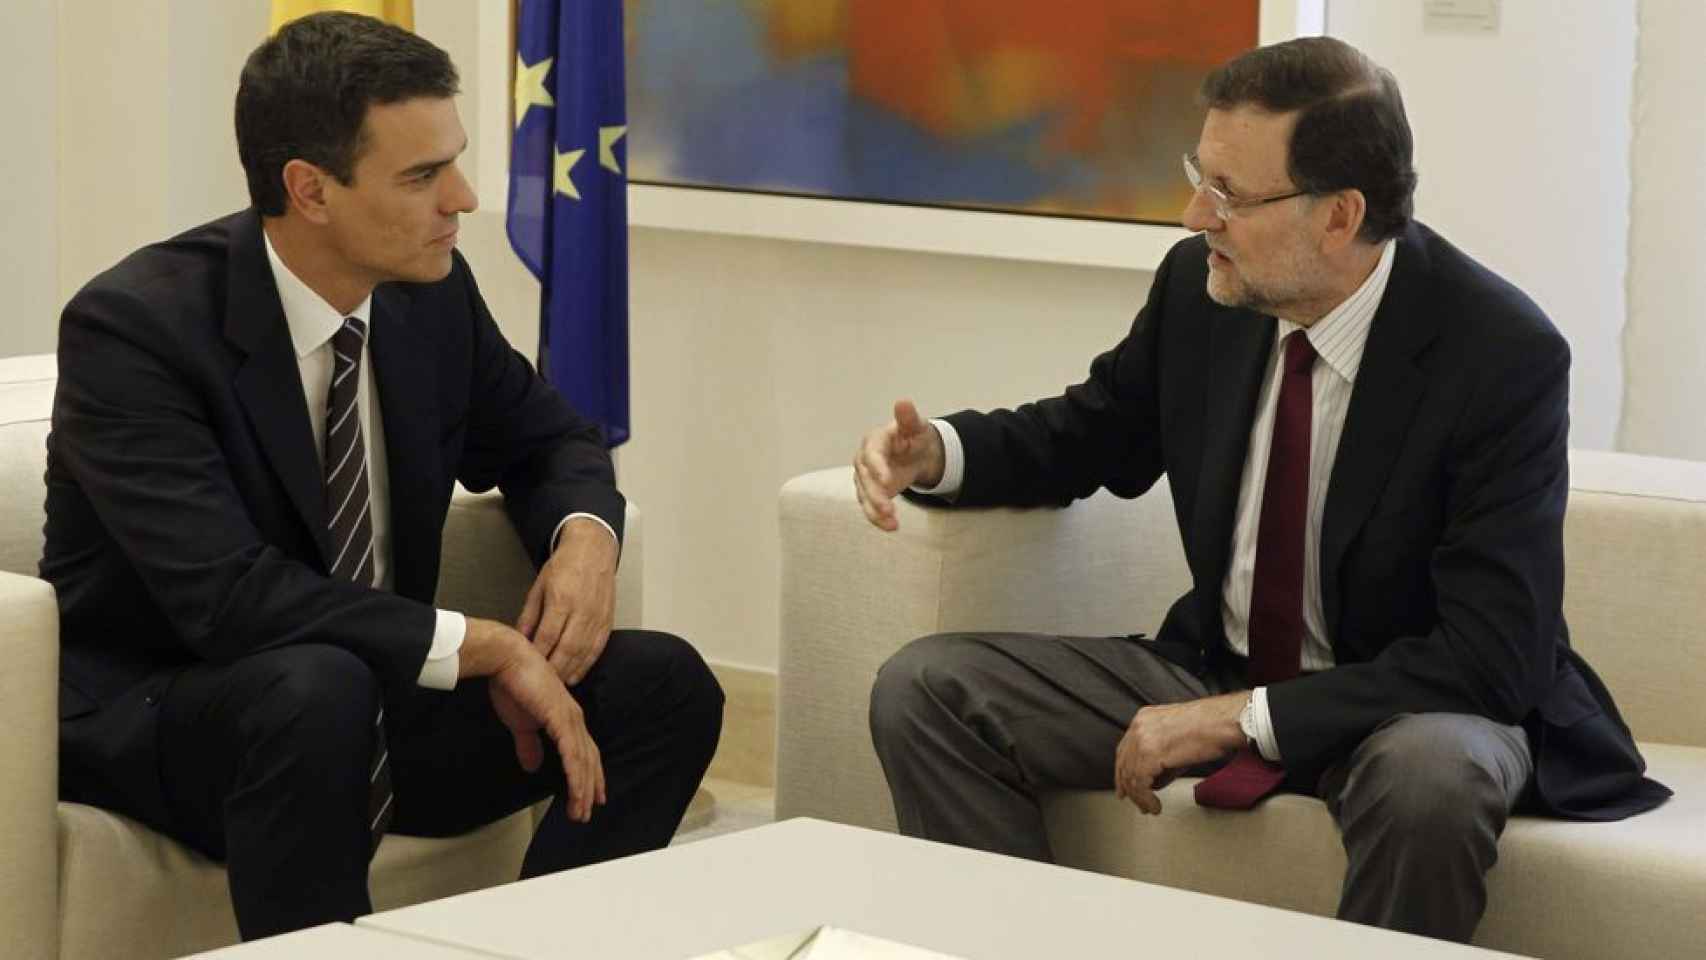 Mariano Rajoy y Pedro Sánchez enuna imagen de archivo en el Palacio de La Moncloa.